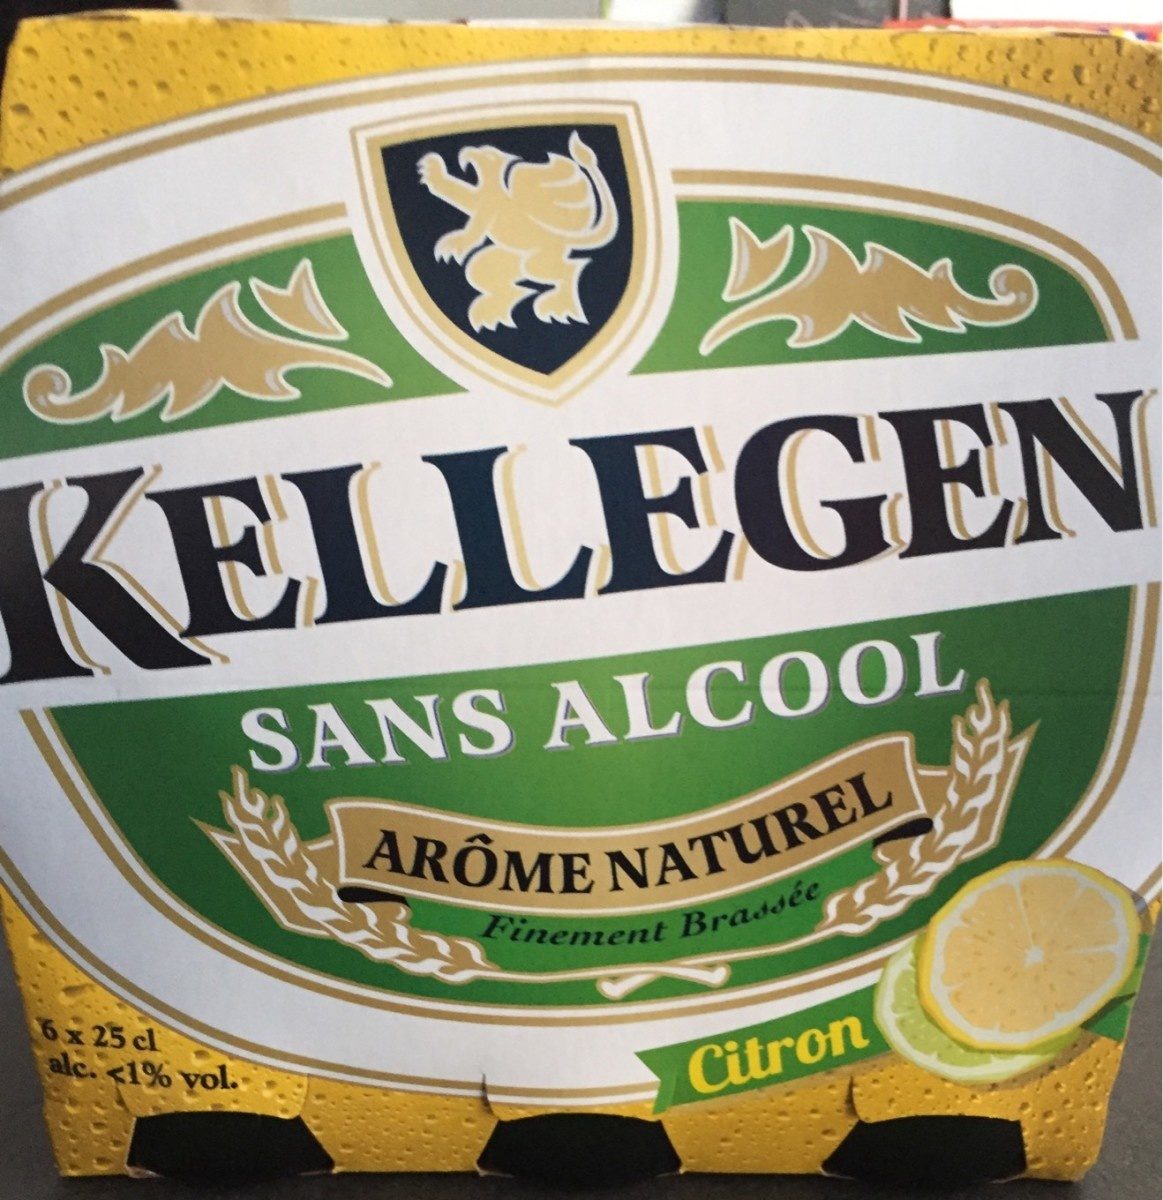 Bière Kellegen sans alcool aromatisée citron - 6x25cl - Product - fr